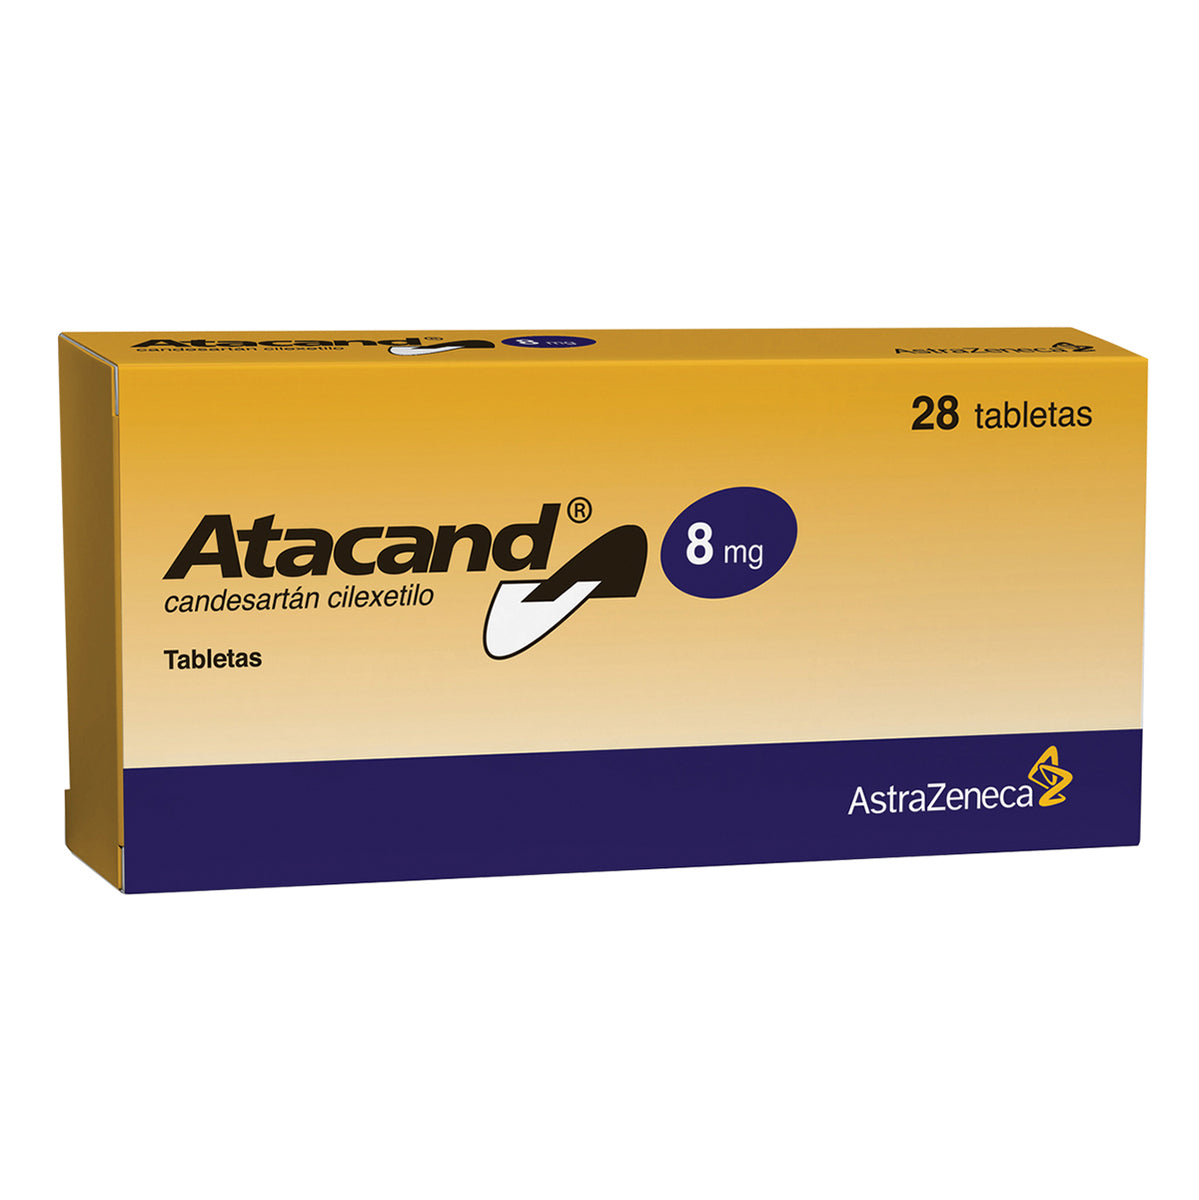 Atacand (Candesartán cilexetilo)  8 mg